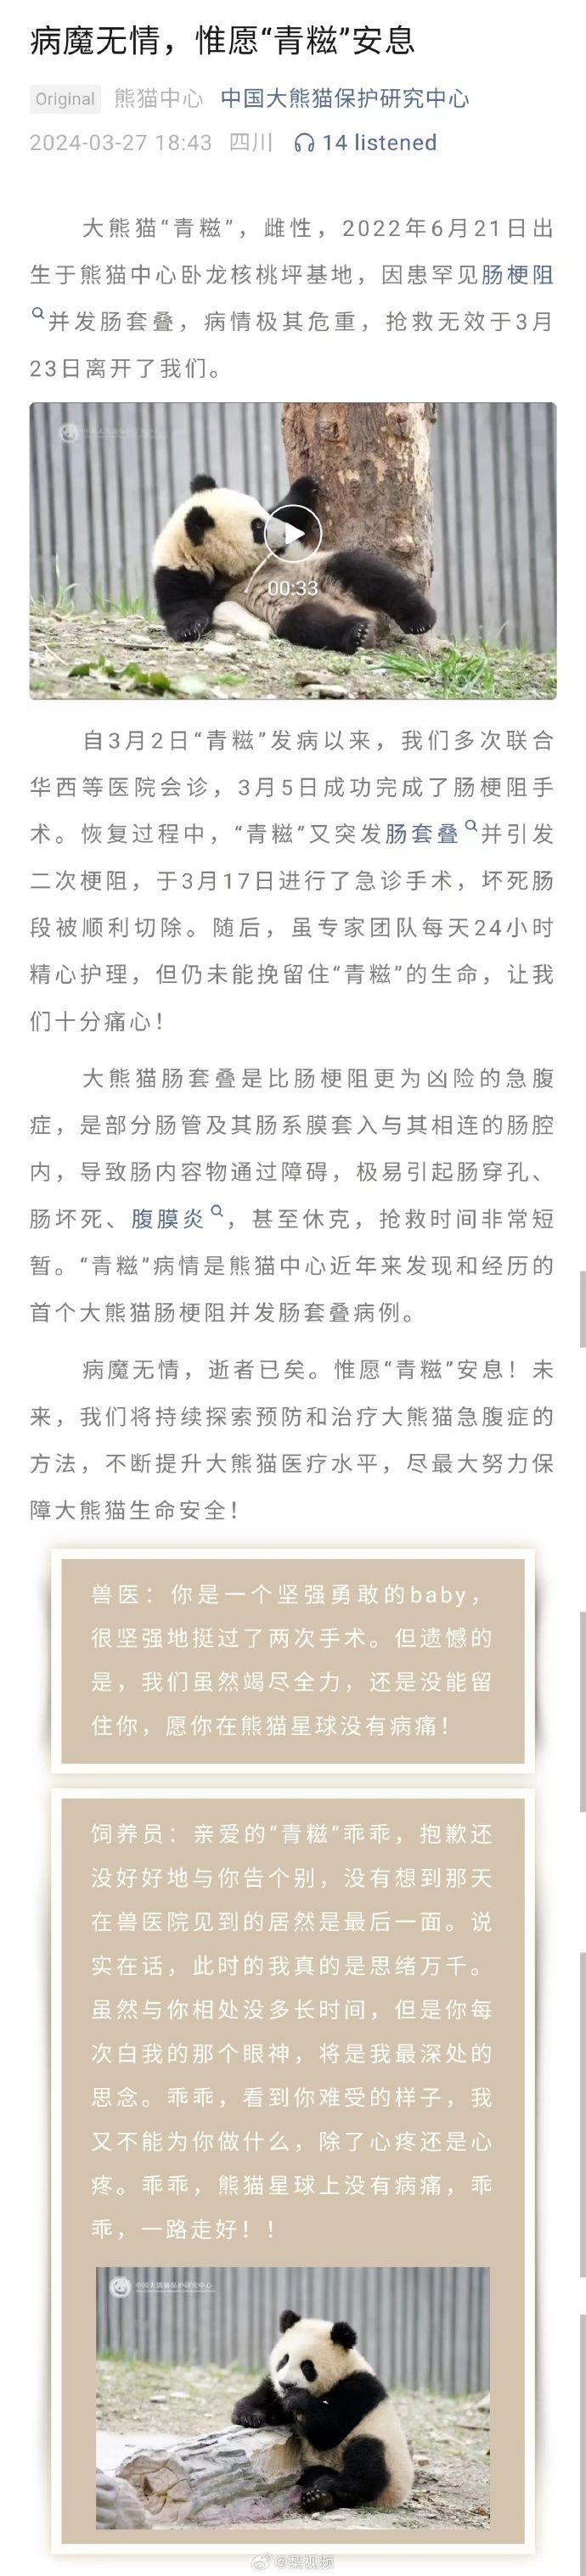 「中国大熊猫保护研究中心」微信公号消息。